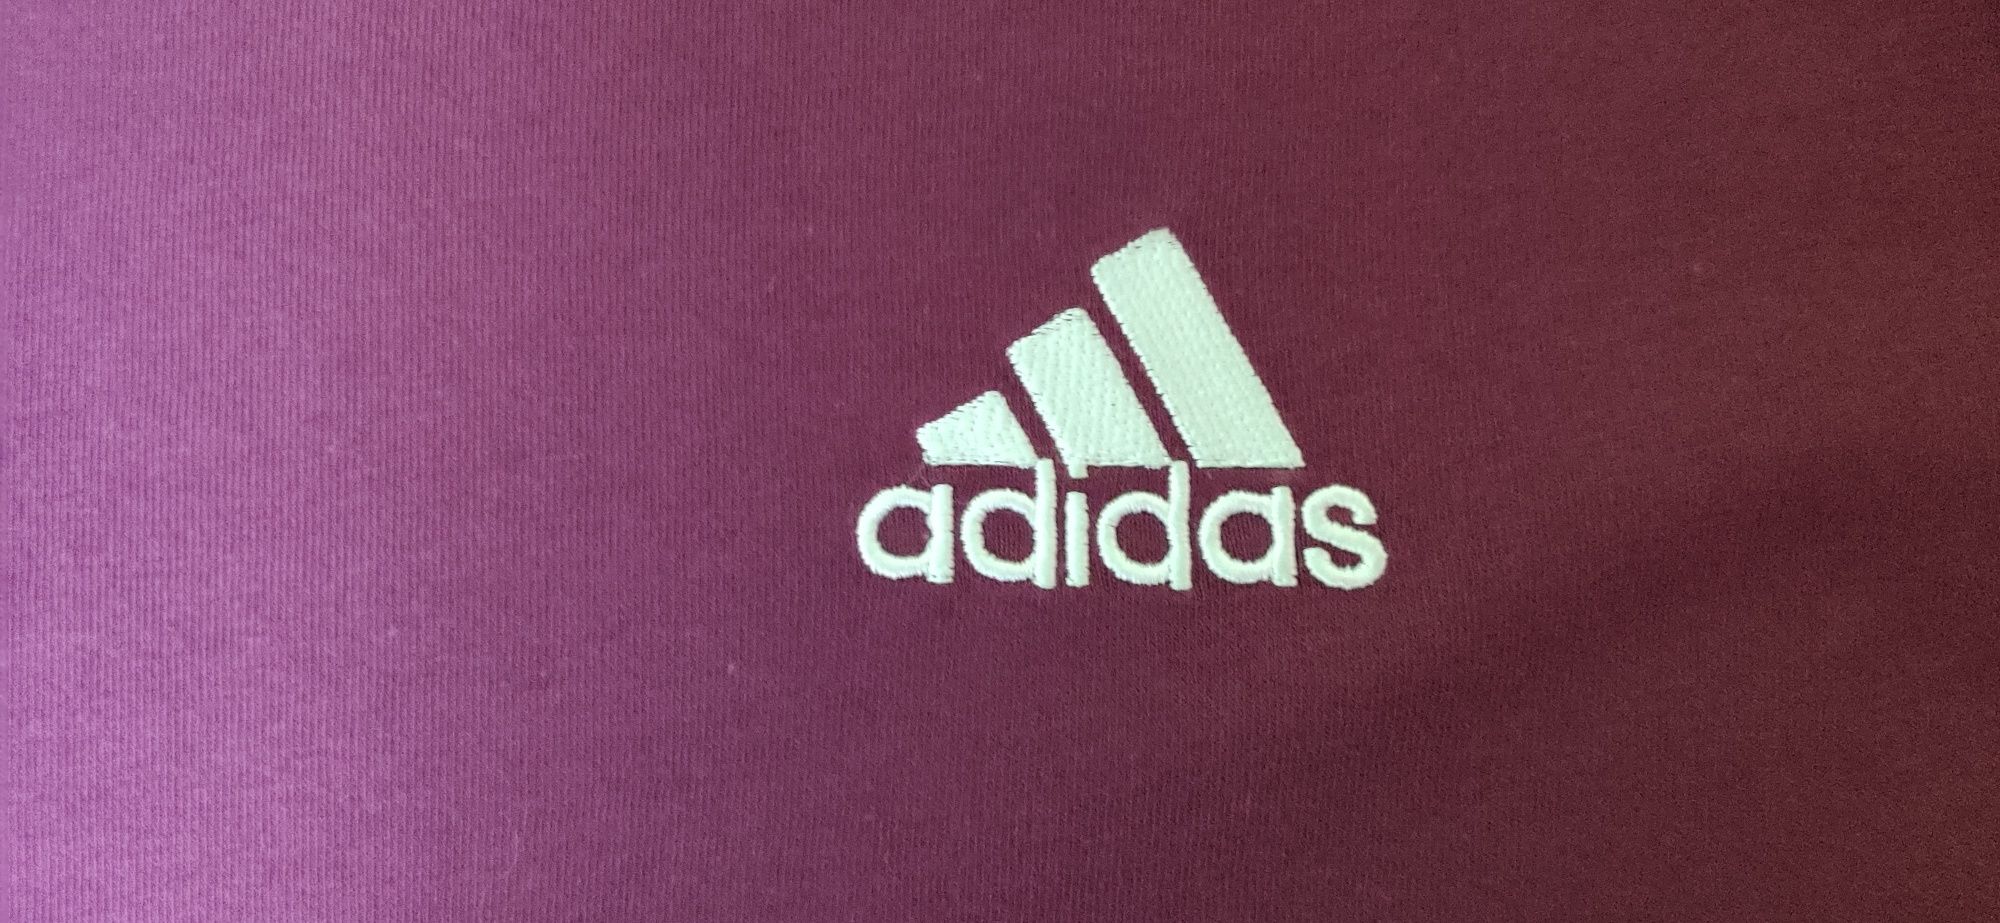 Koszulka t-shirt firmy Adidas z małym logo
Witam do sprzedania koszulk